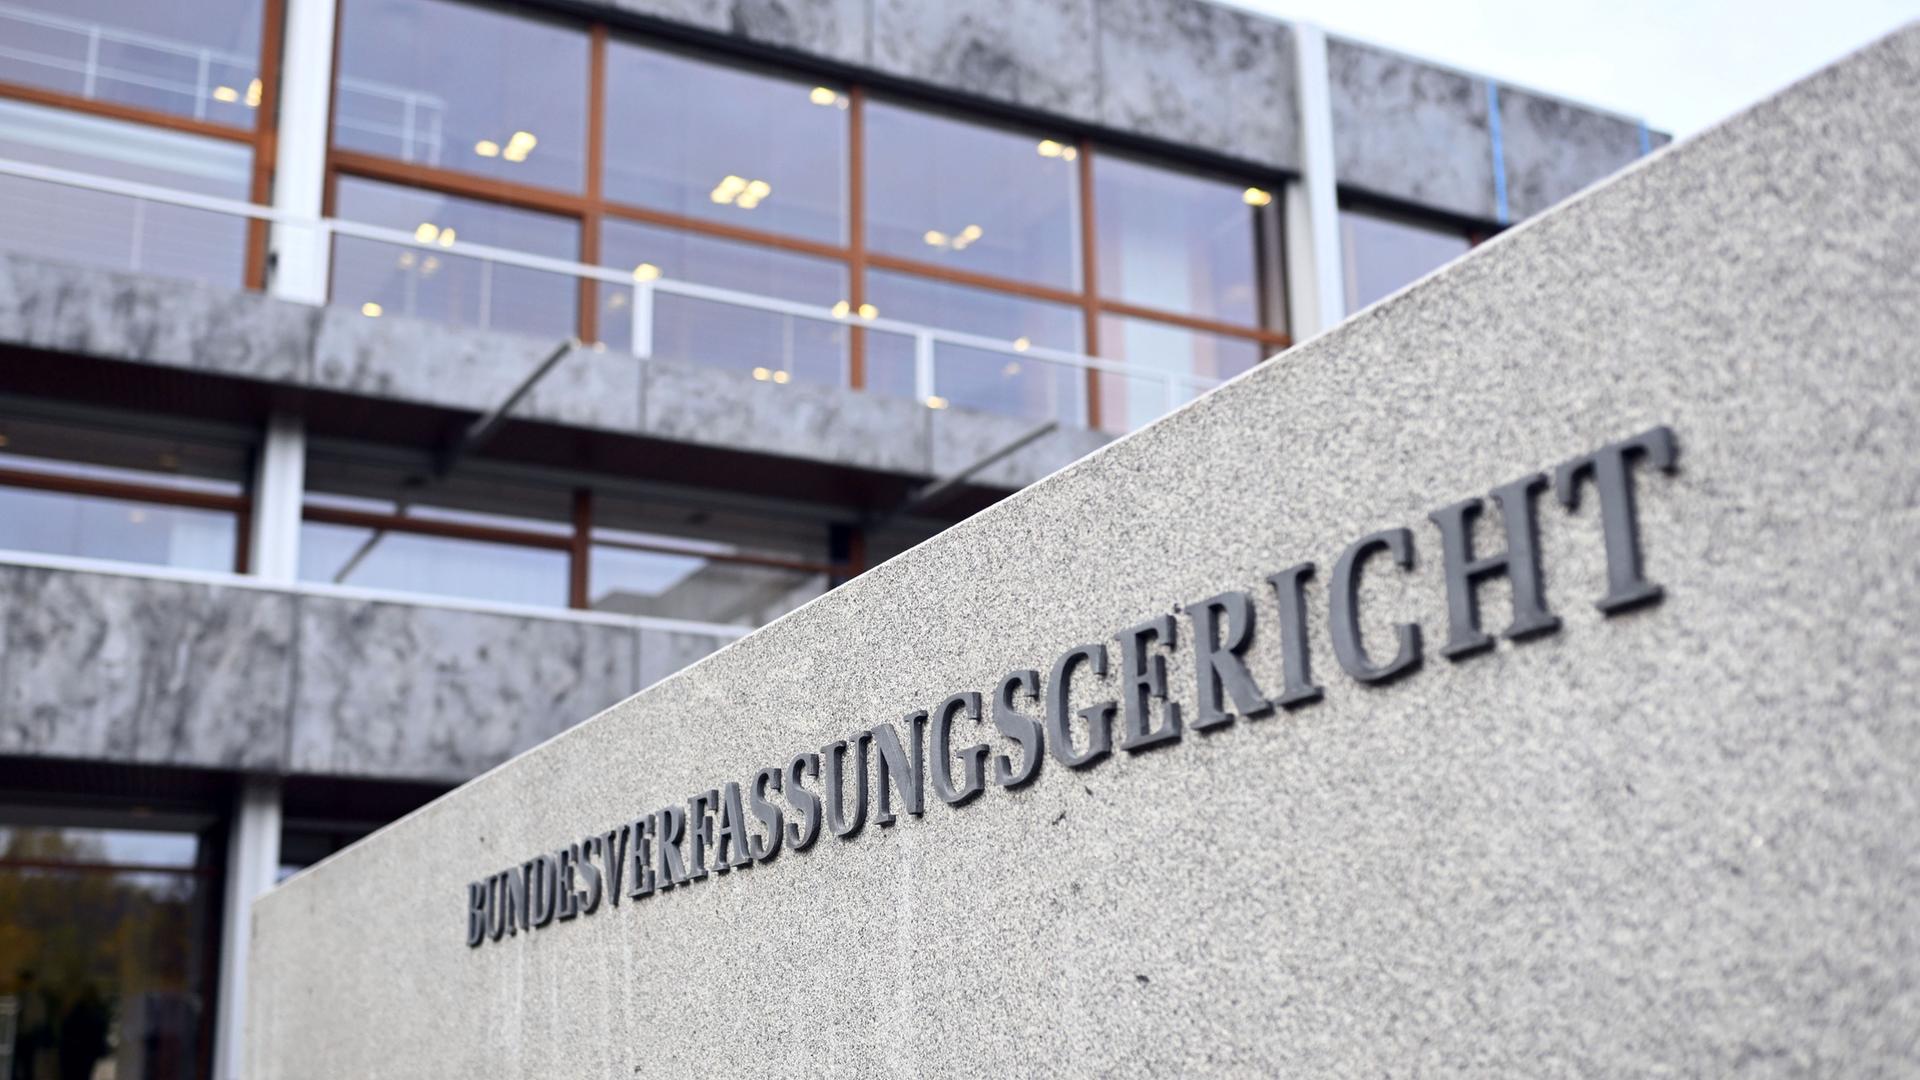 Aussenaufnahme des Bundesverfassungsgerichts in Karlsruhe. Ein grauer Betonbau, im Vordergrund ist eine Mauer auf der "Bundesverfassungsgericht" steht.